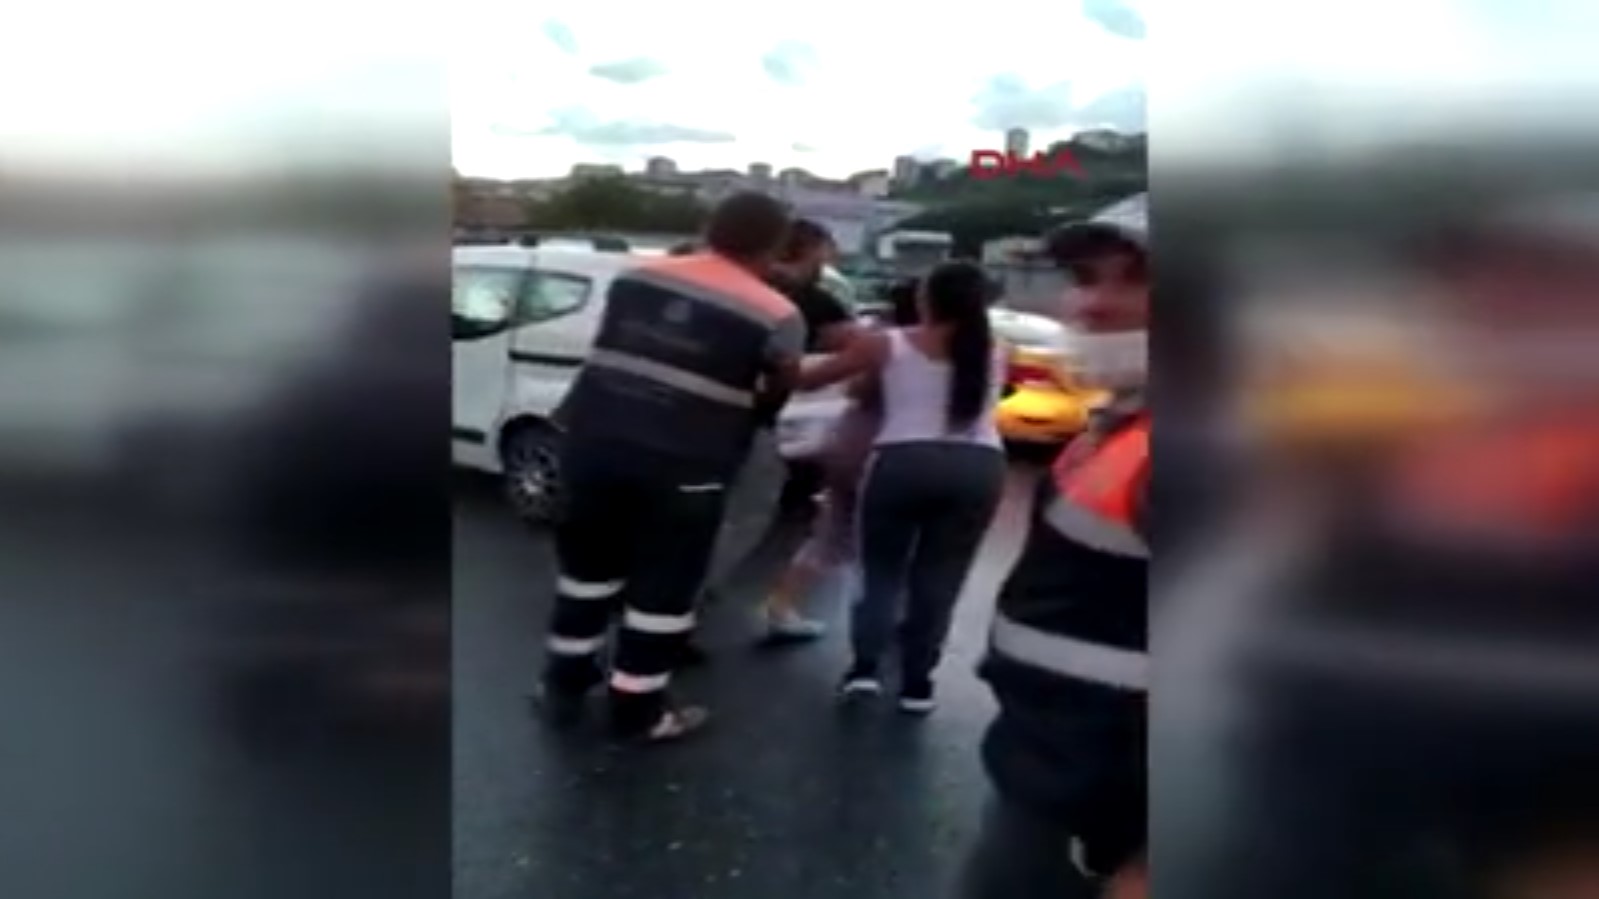 Alibeyköy de bir kişi trafikte kadına saldırdı #3